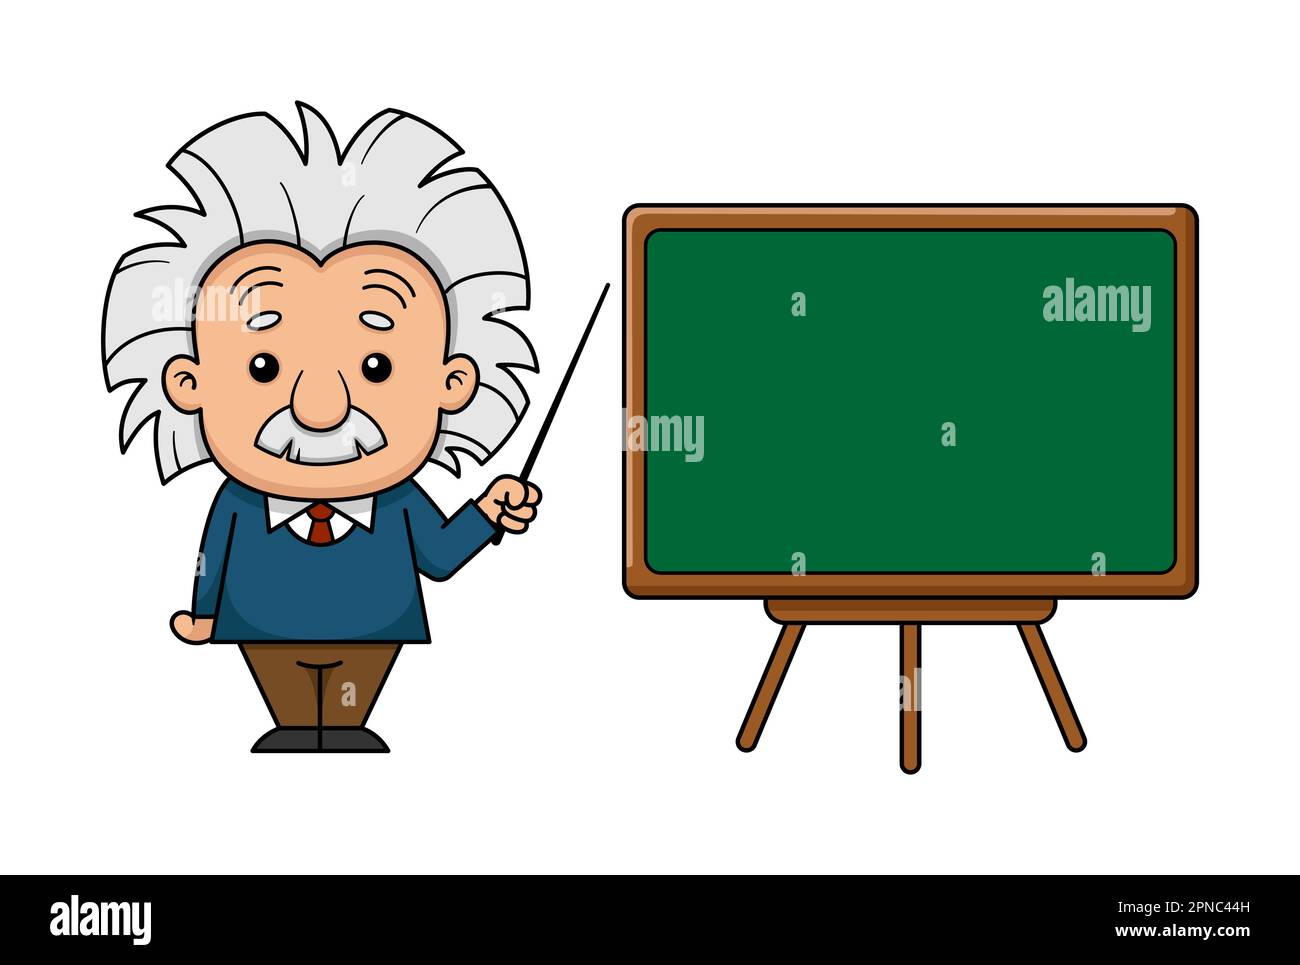 Albert Einstein Cartoon Character With Board Stock Vector